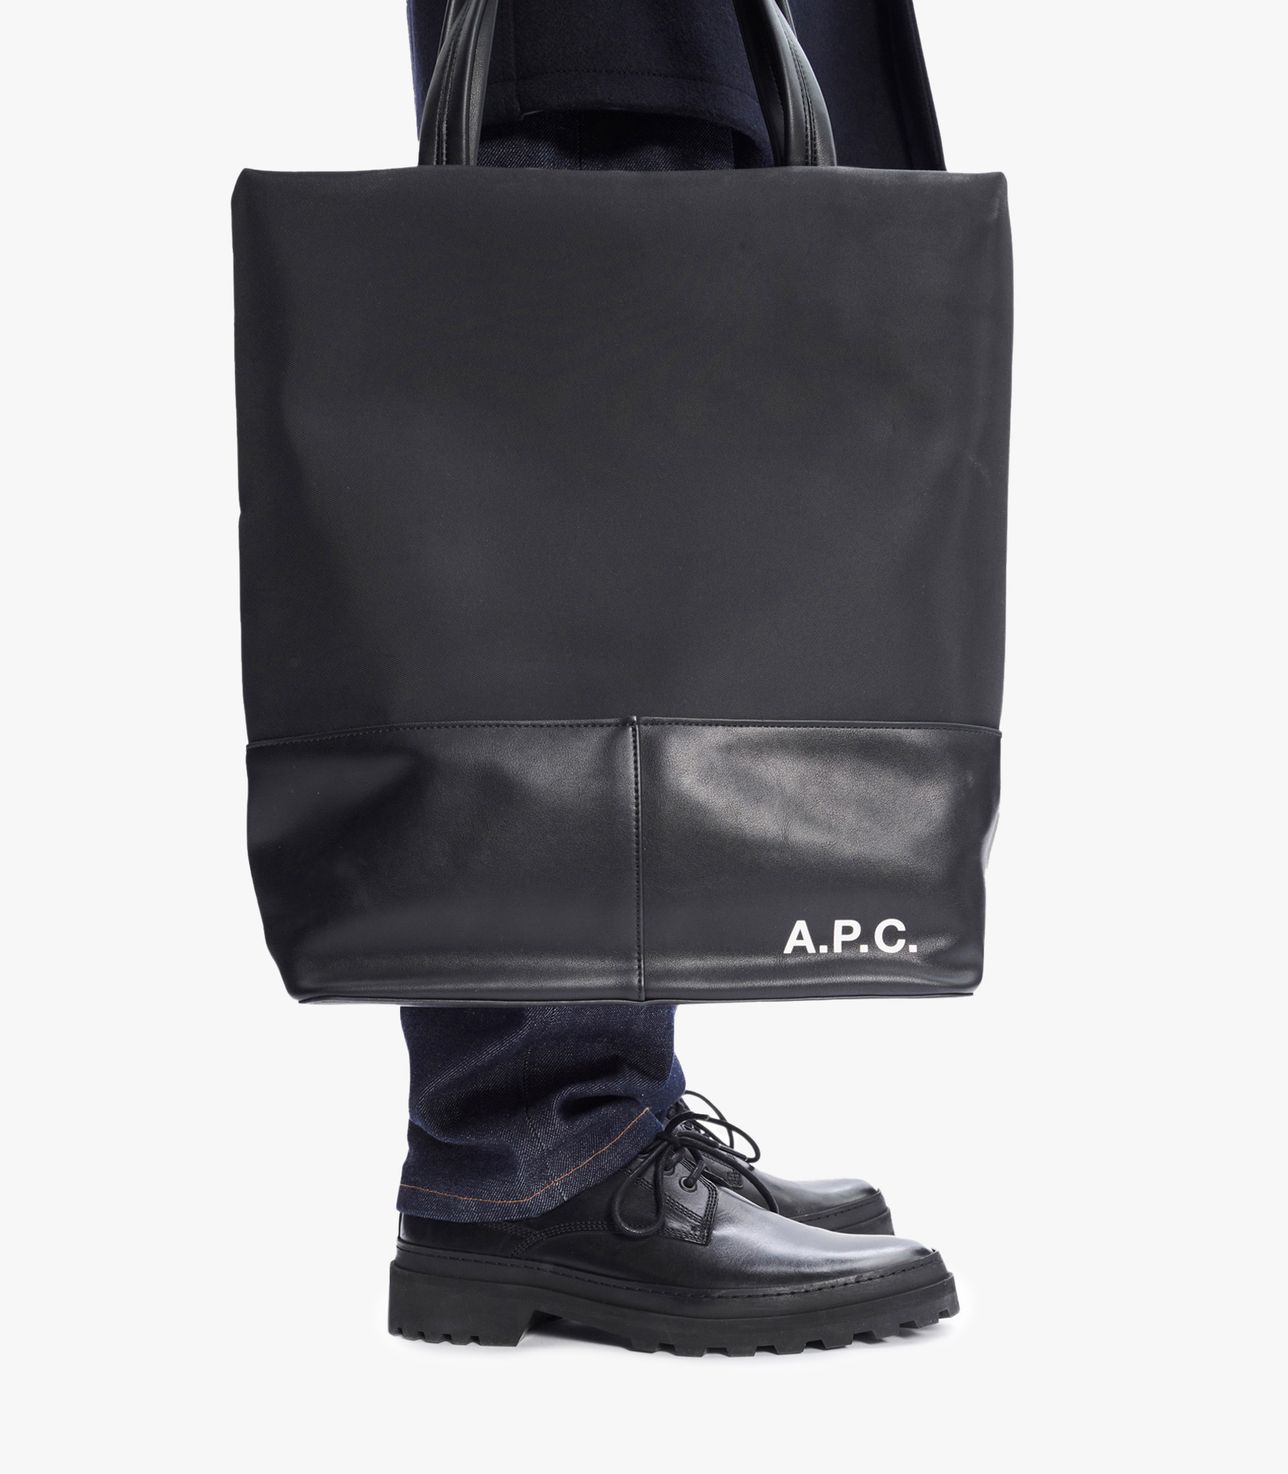 Camden shopping bag BLACK APC